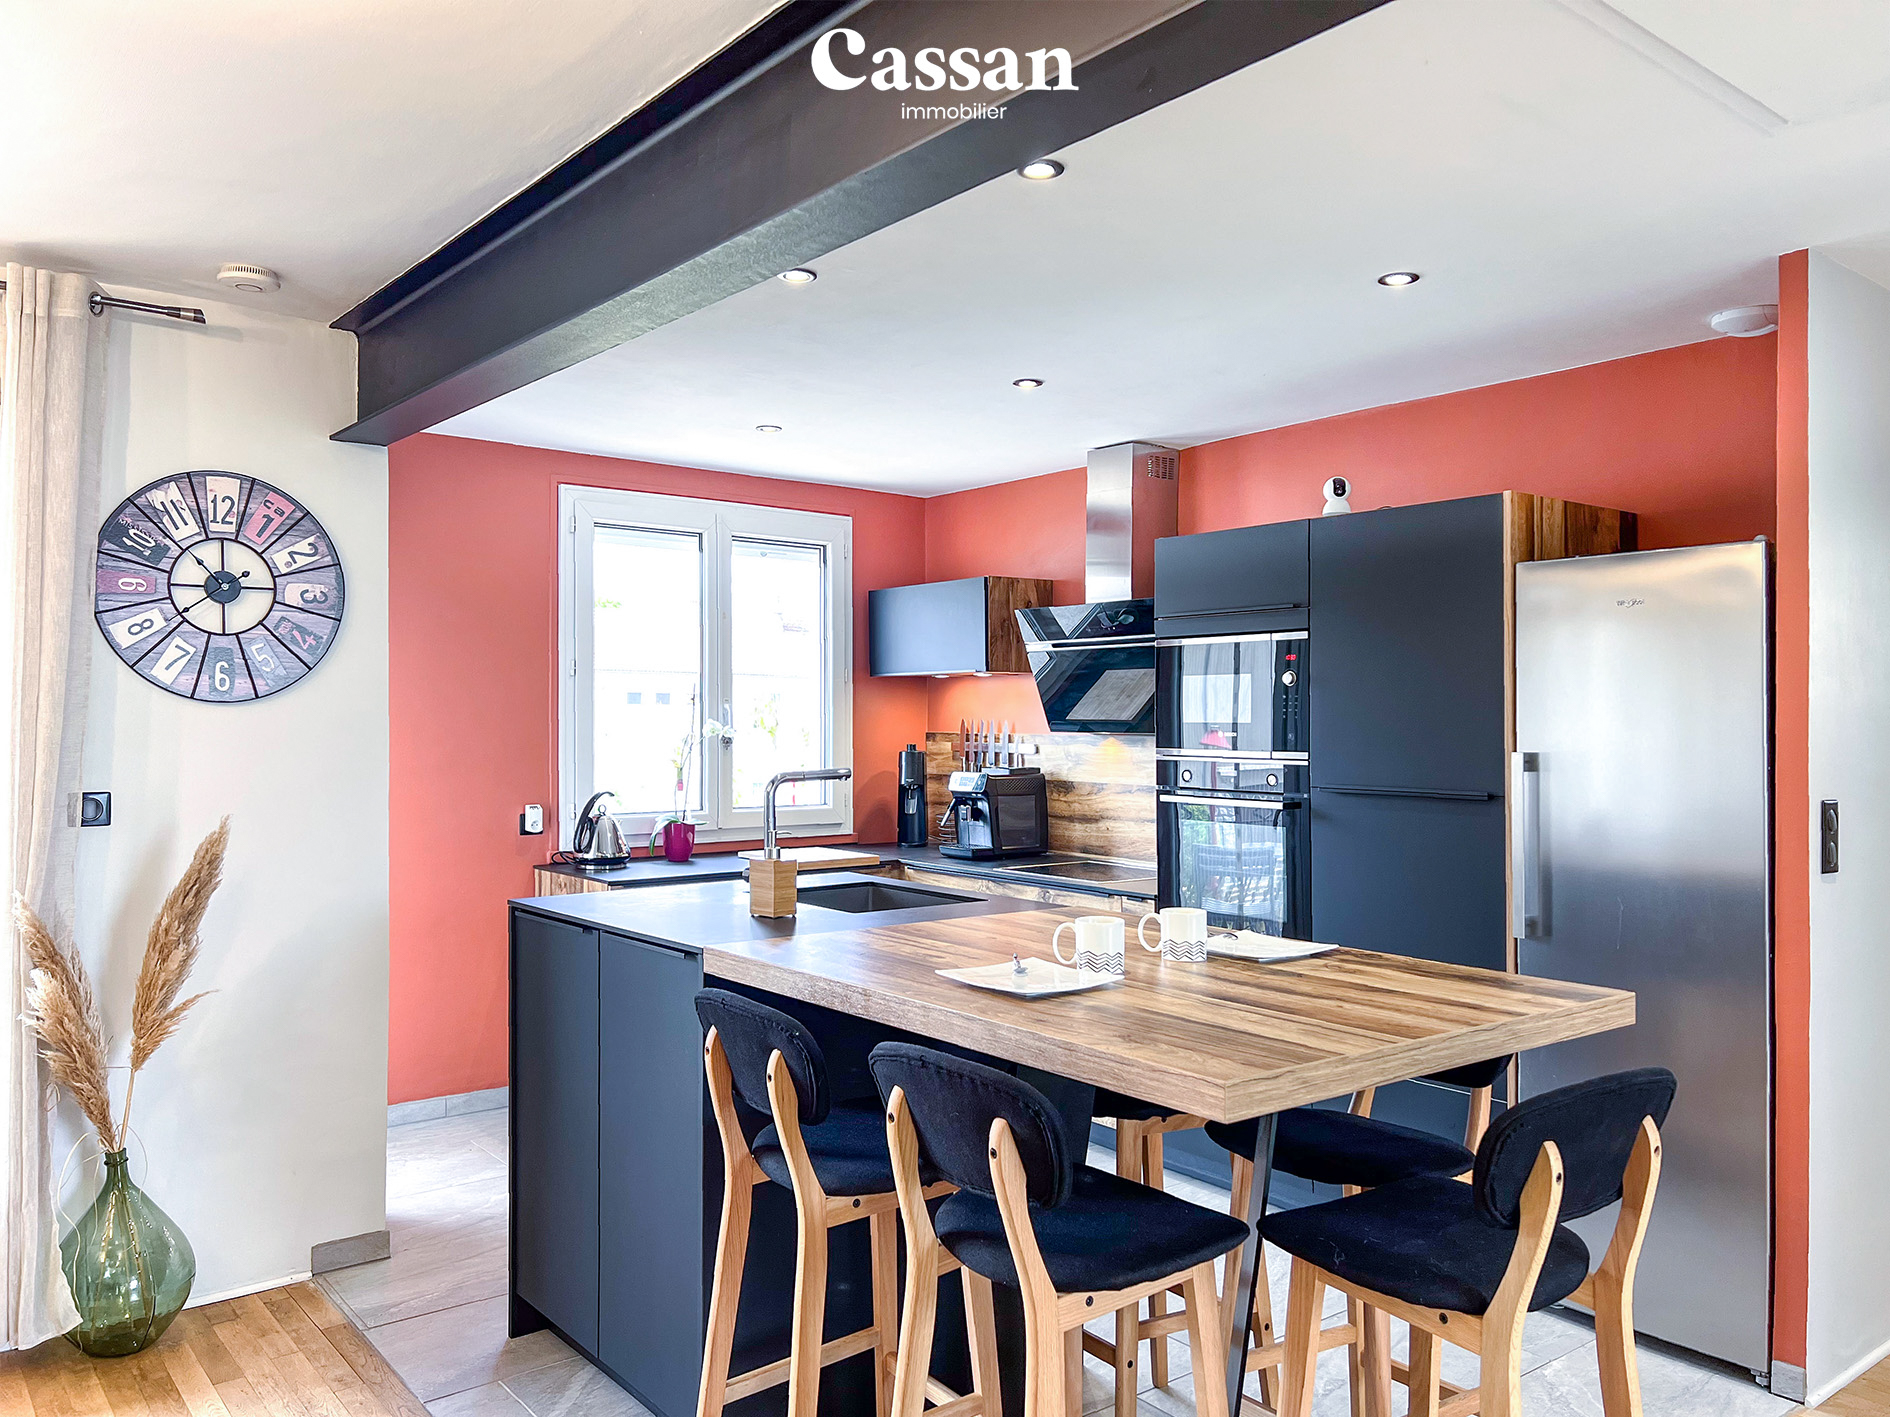 Cuisine maison à vendre Arpajon Cassan immobilier